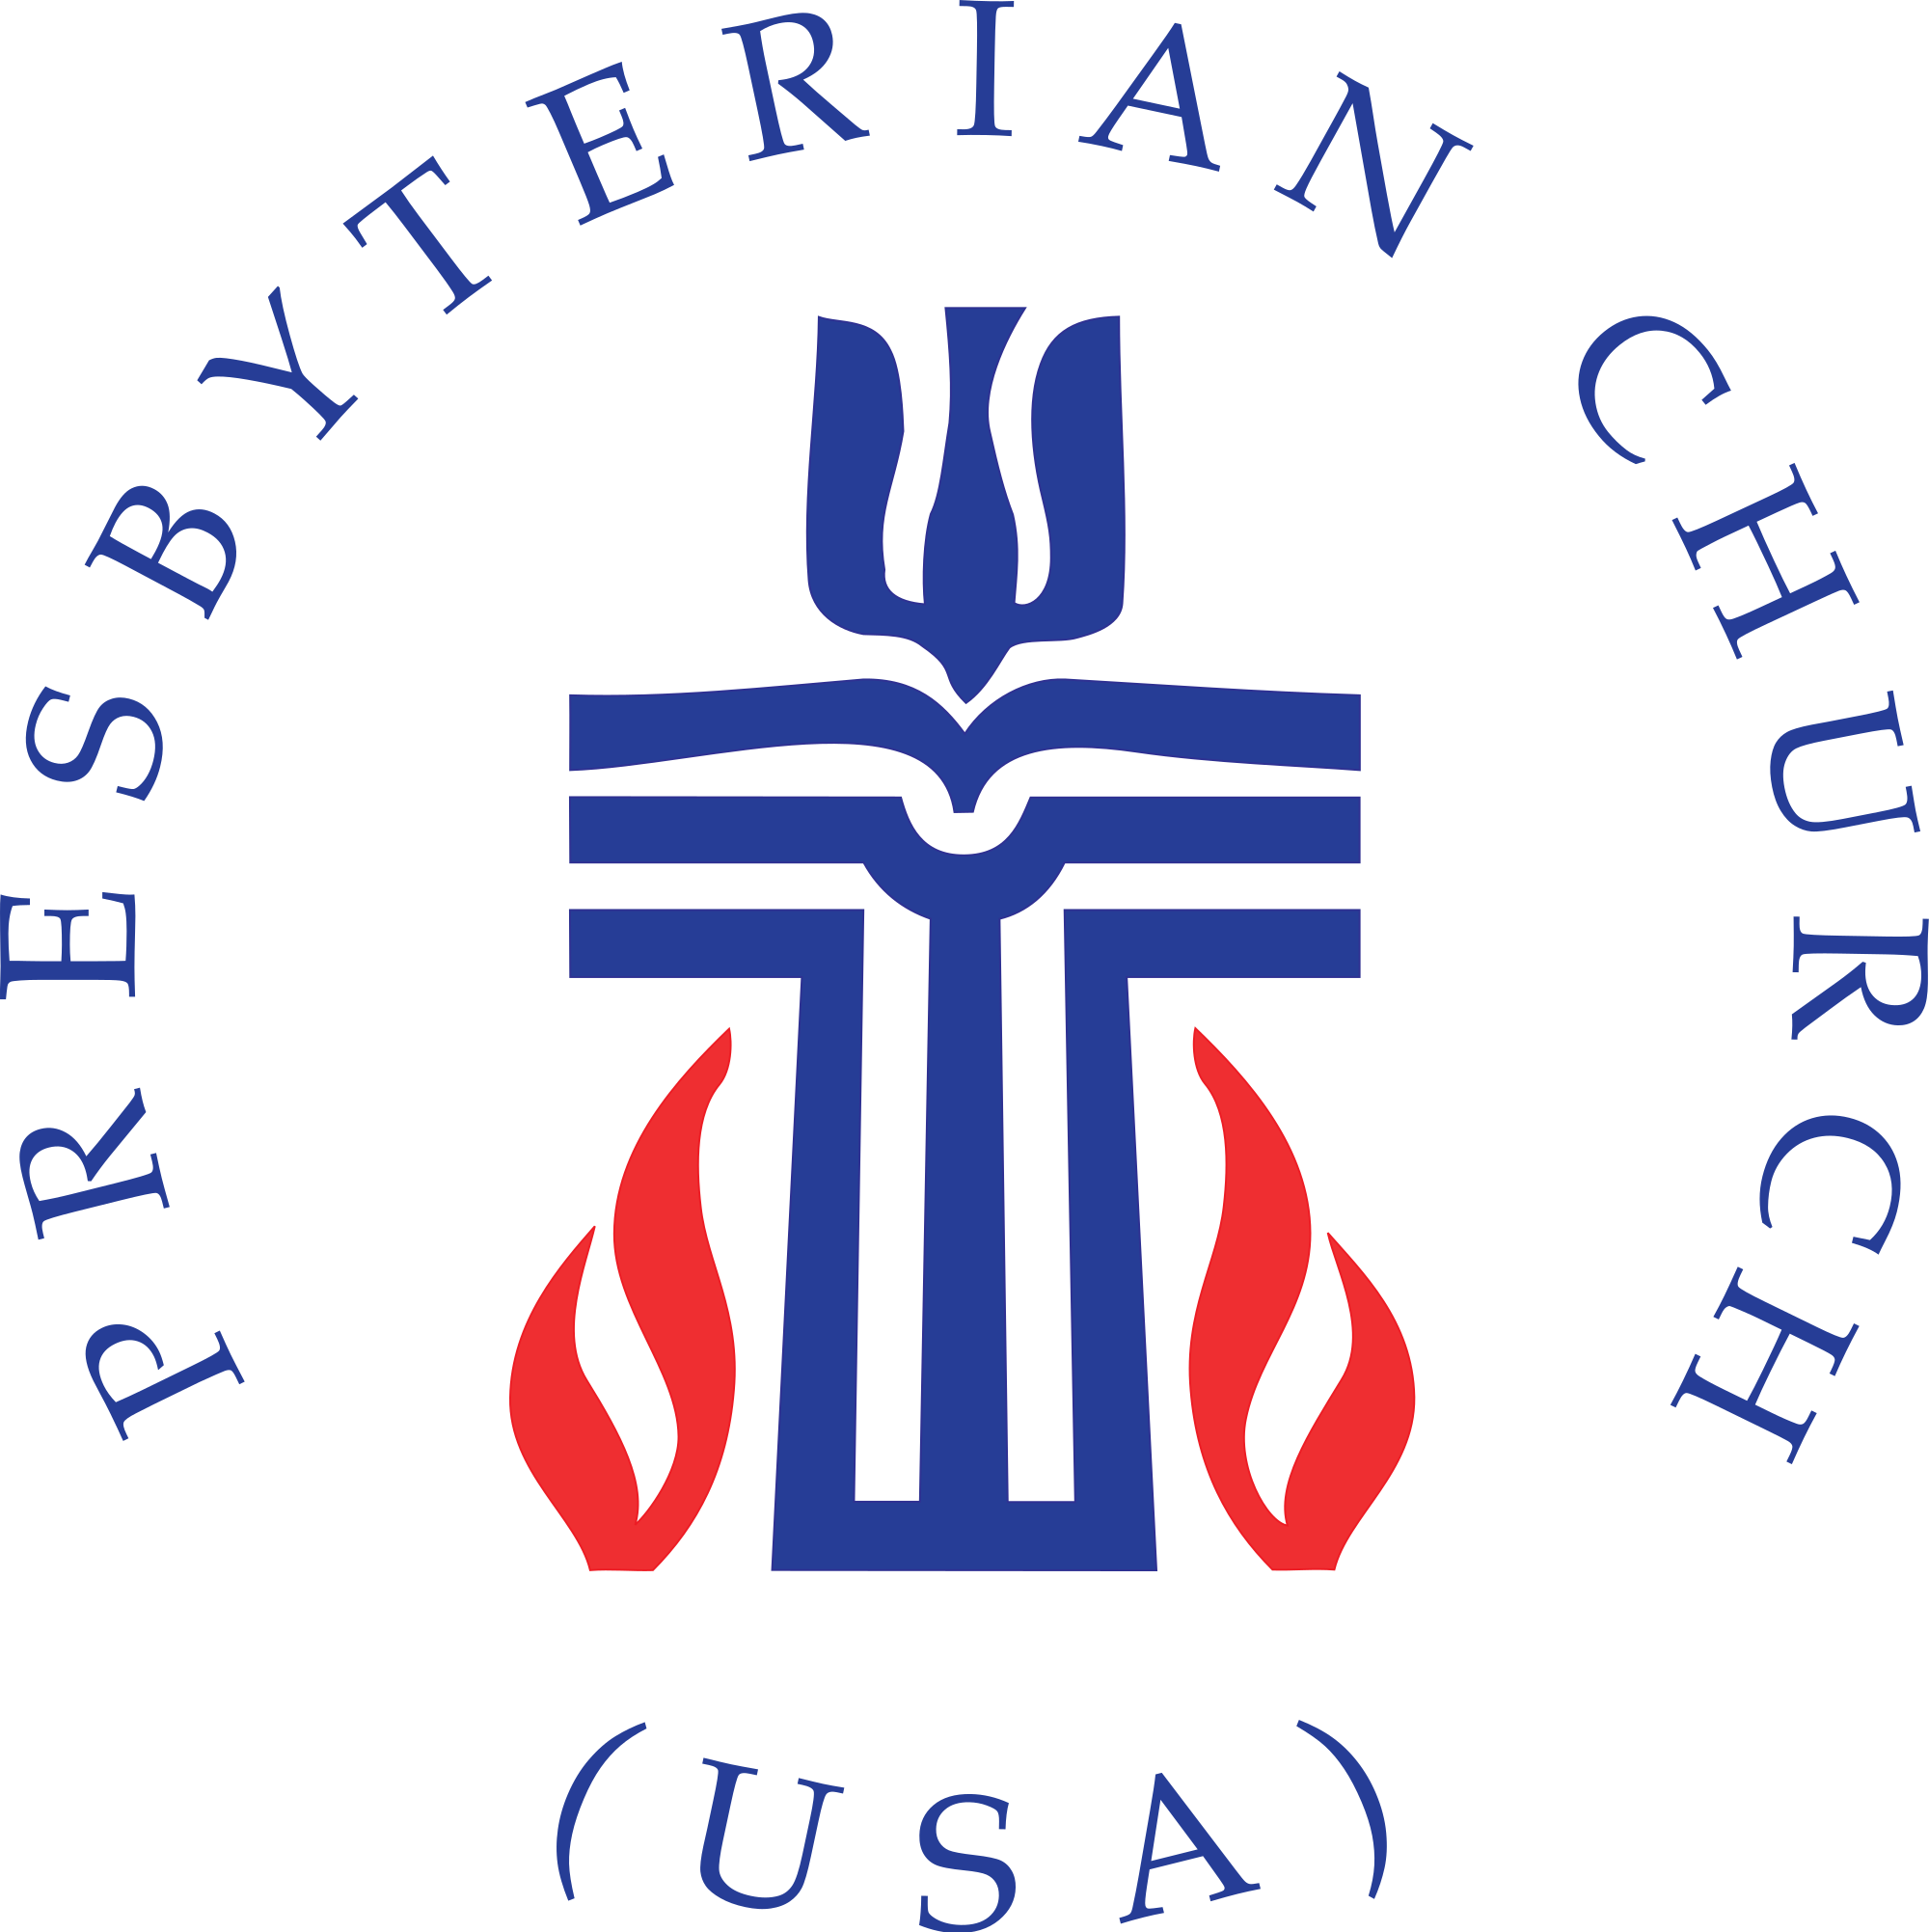 Presbyterian Church U.S.A Logo